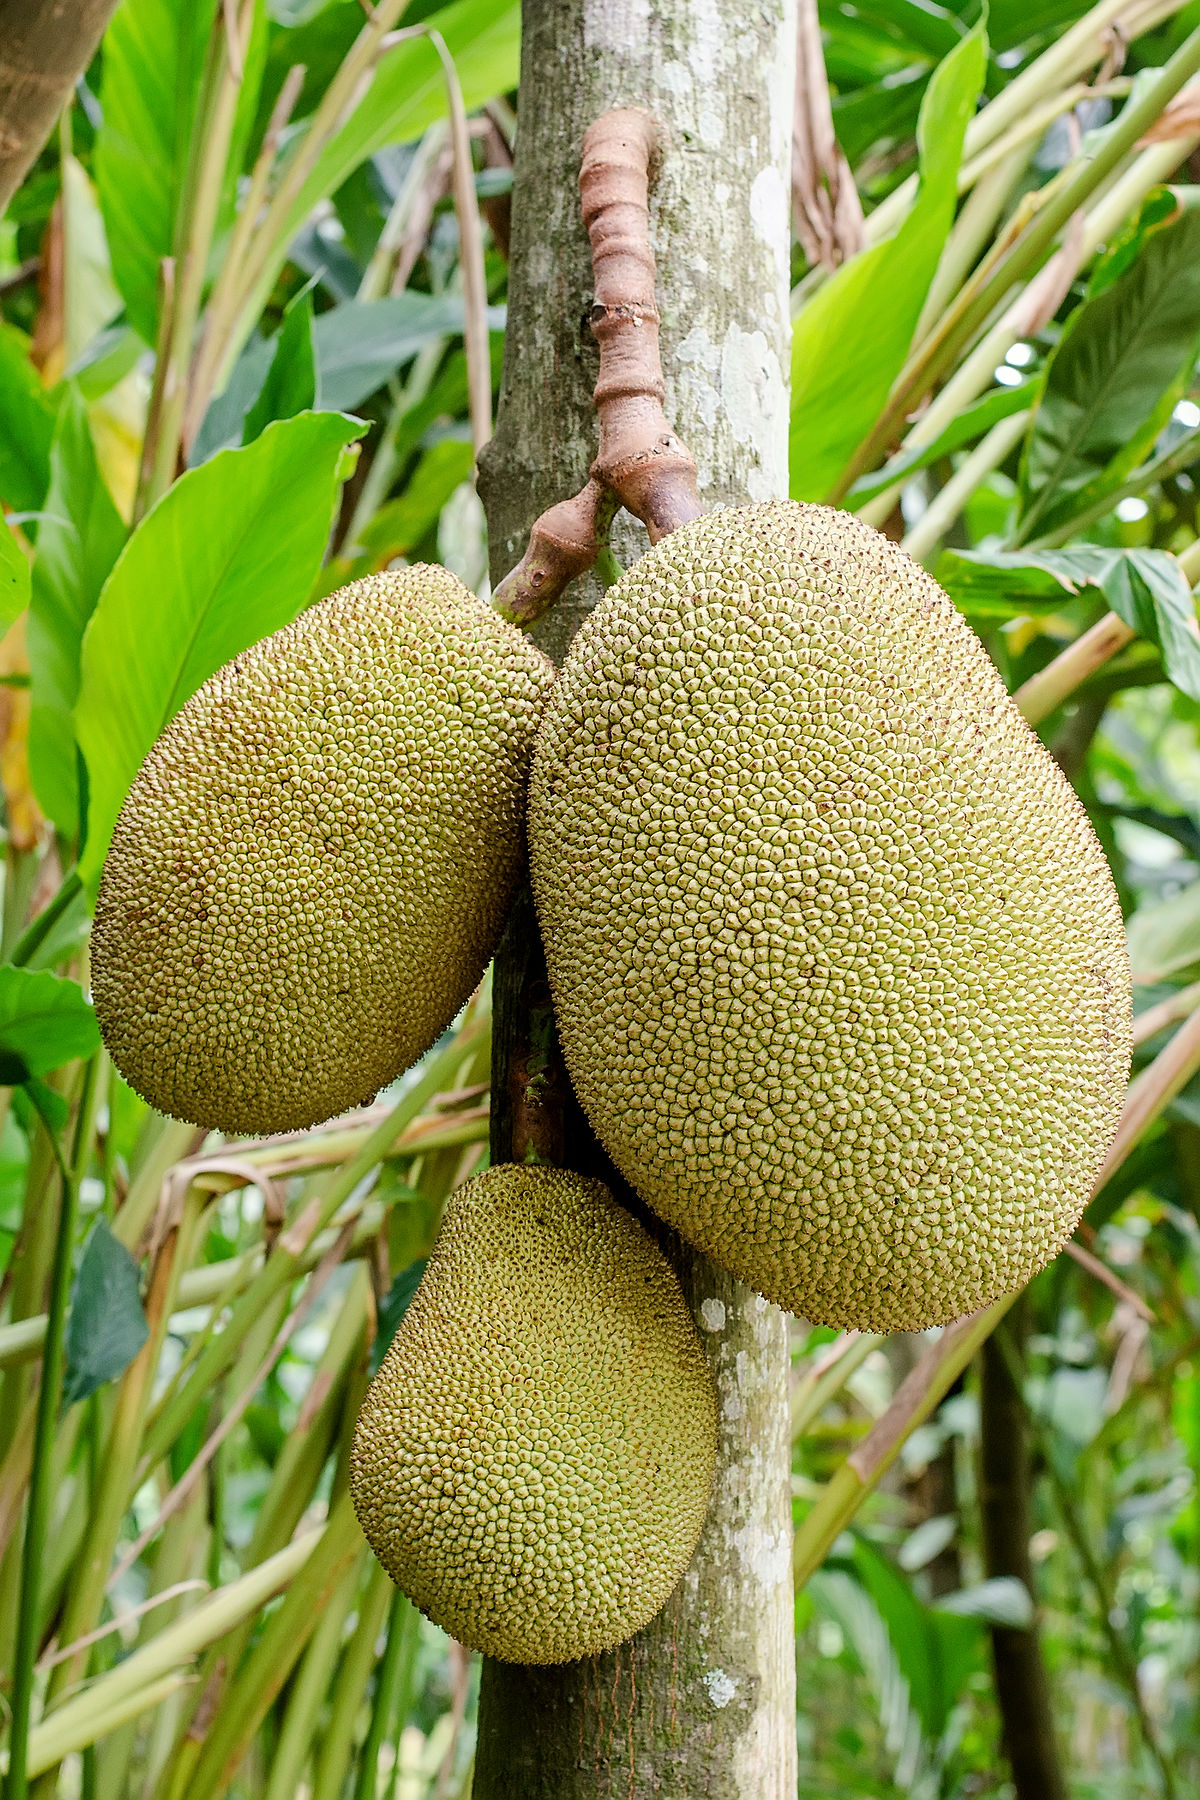 Jackfruit - Wikipedia